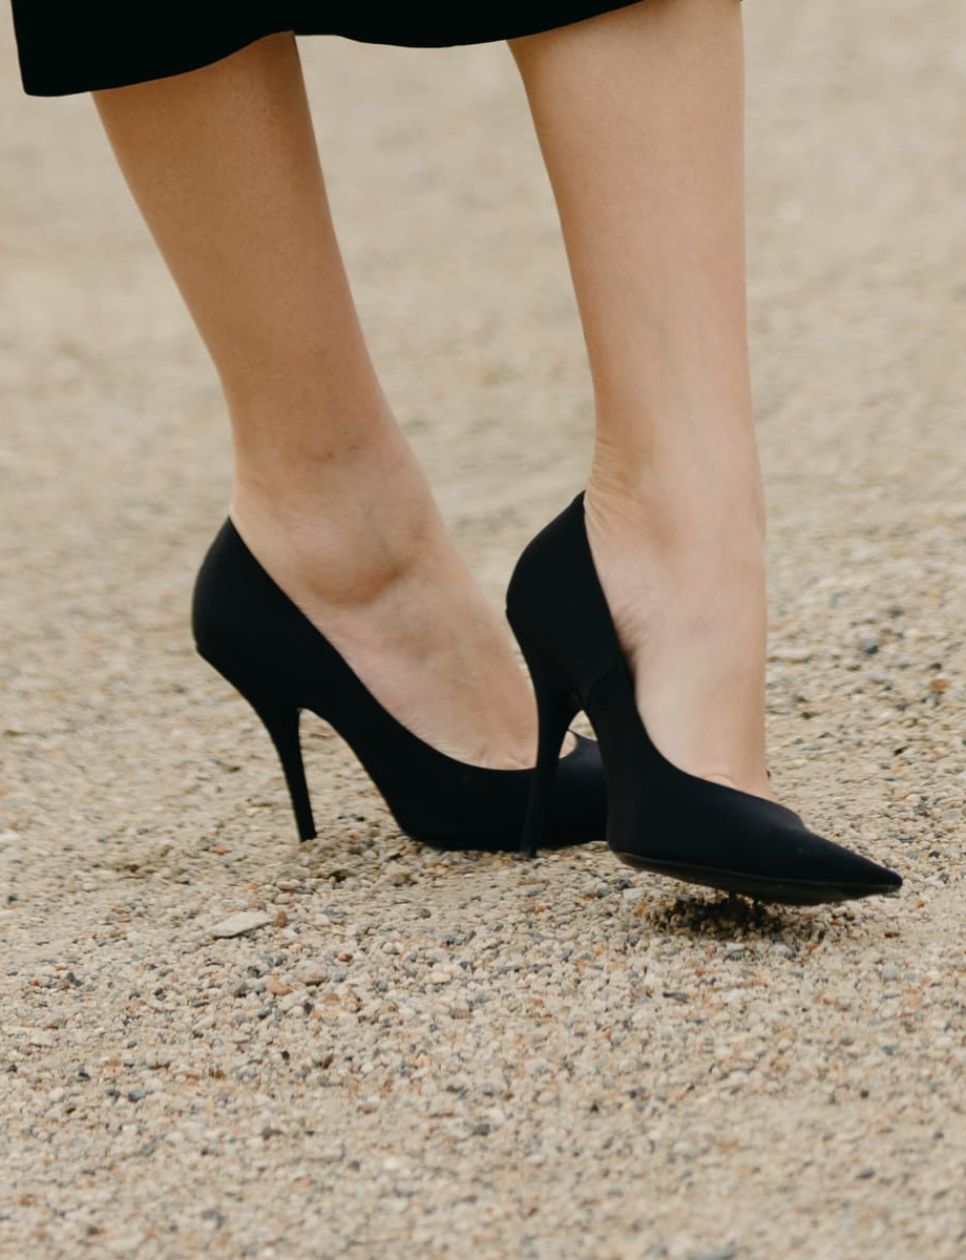 Pump heels merupakan sepatu kerja populer di kalangan wanita